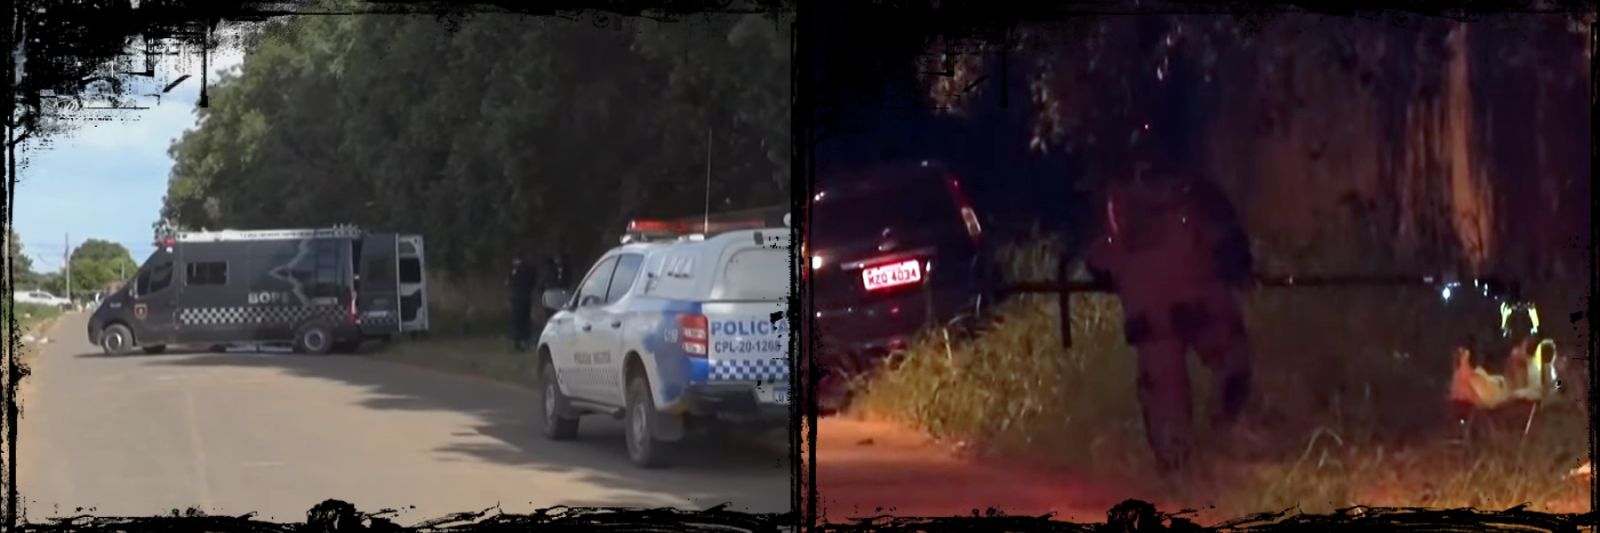 PÂNICO - Carro com explosivos é localizado em Rondônia e polícia aciona esquadrão antibomba - News Rondônia